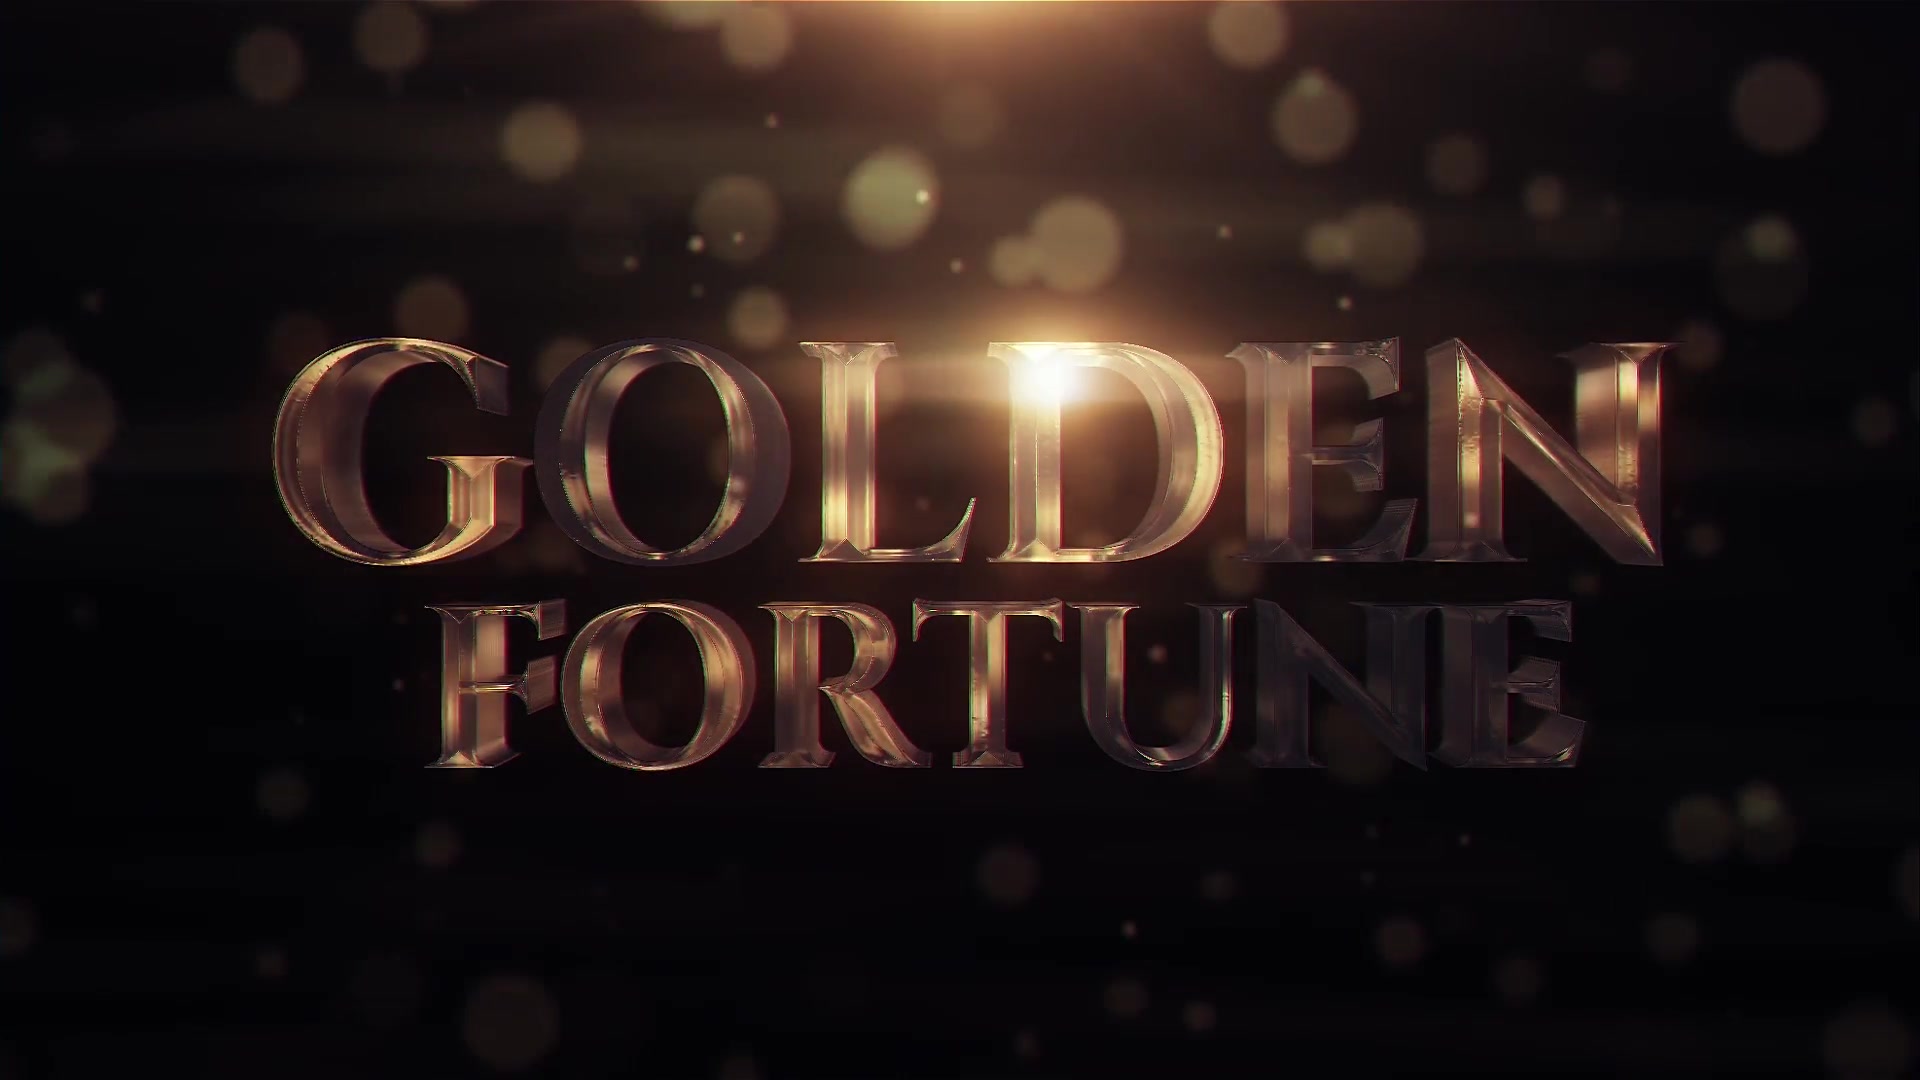 Golden Fortune Videohive 22595458 Premiere Pro Image 9